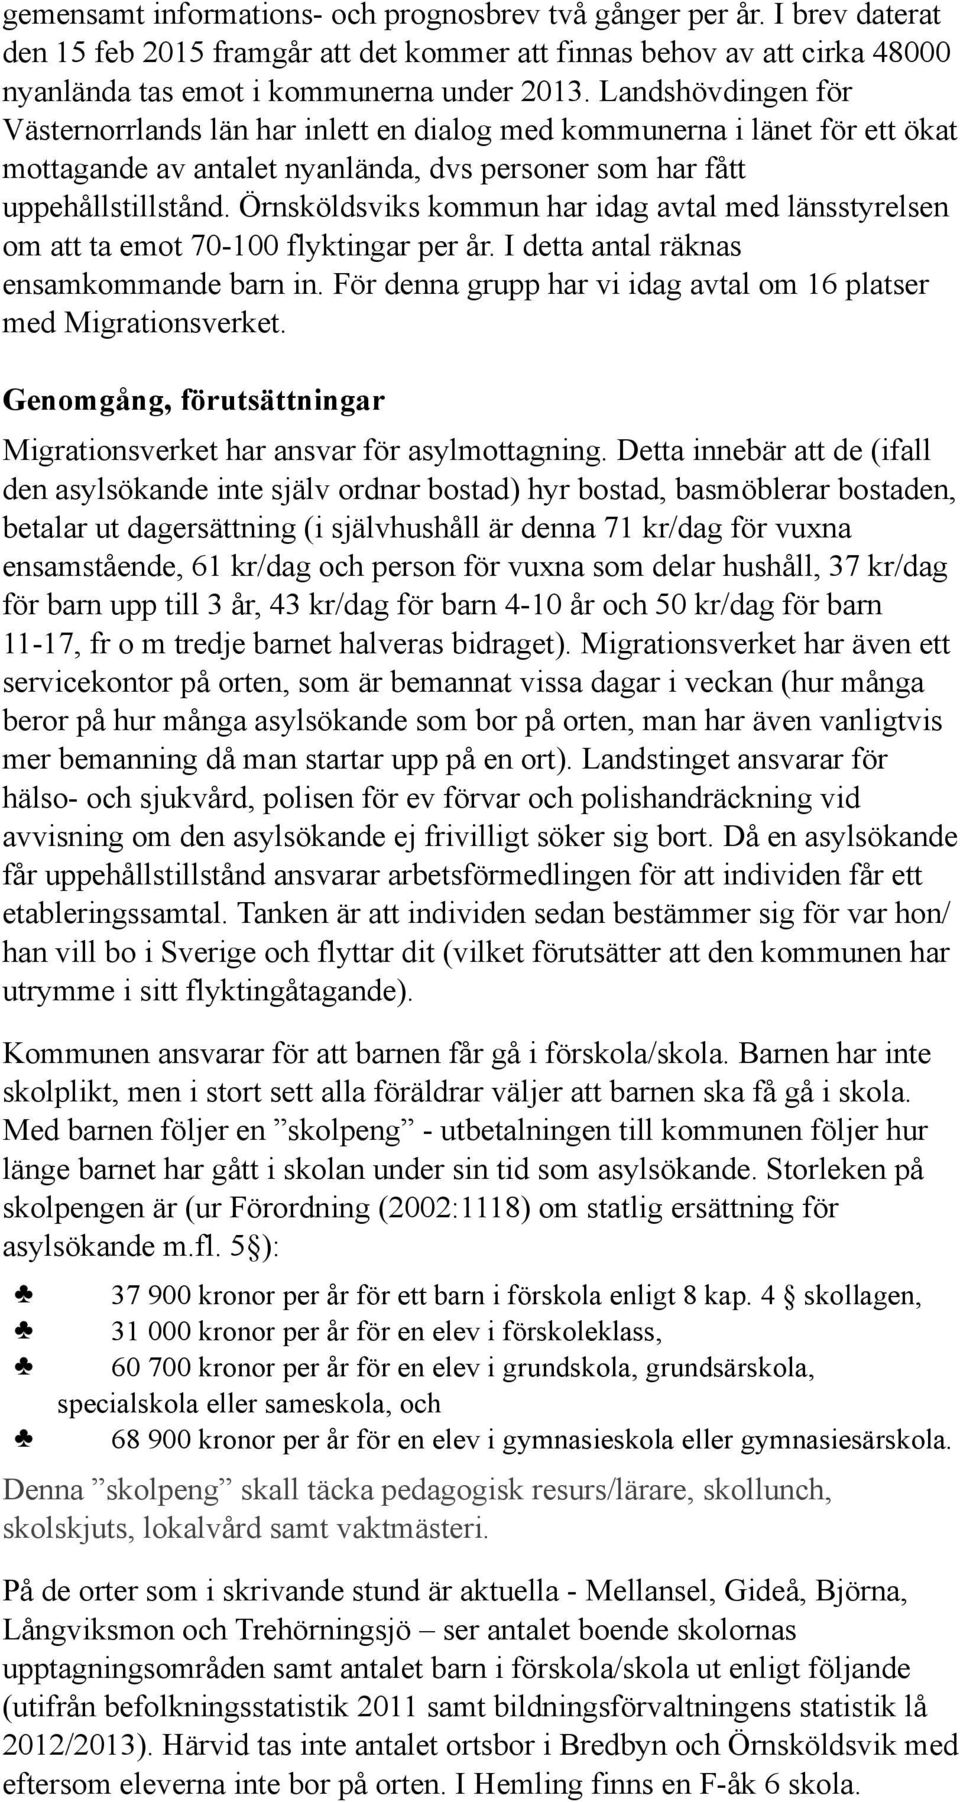 Örnsköldsviks kommun har idag avtal med länsstyrelsen om att ta emot 70-100 flyktingar per år. I detta antal räknas ensamkommande barn in.